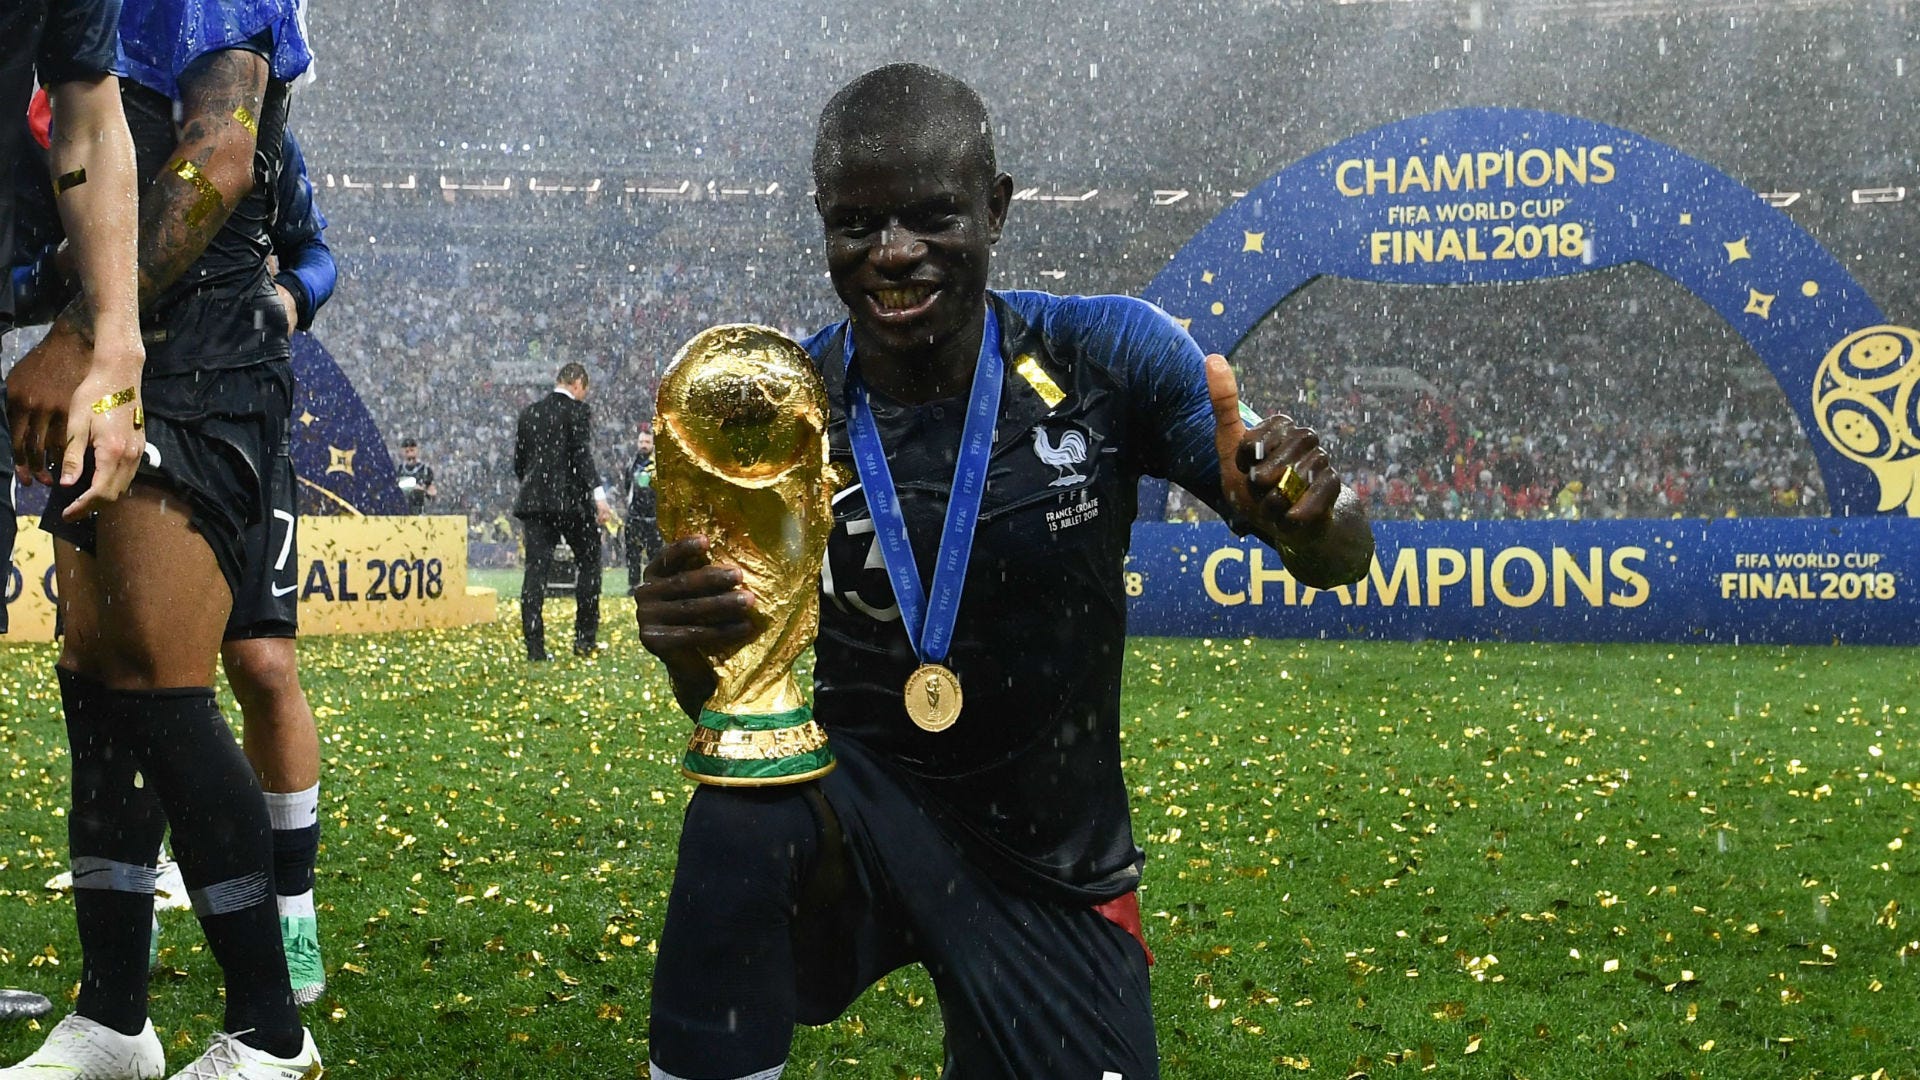 World Cup: Vì sao Kante là "kẻ gian lận" nổi tiếng nhất nước Pháp? | Goal.com Việt Nam